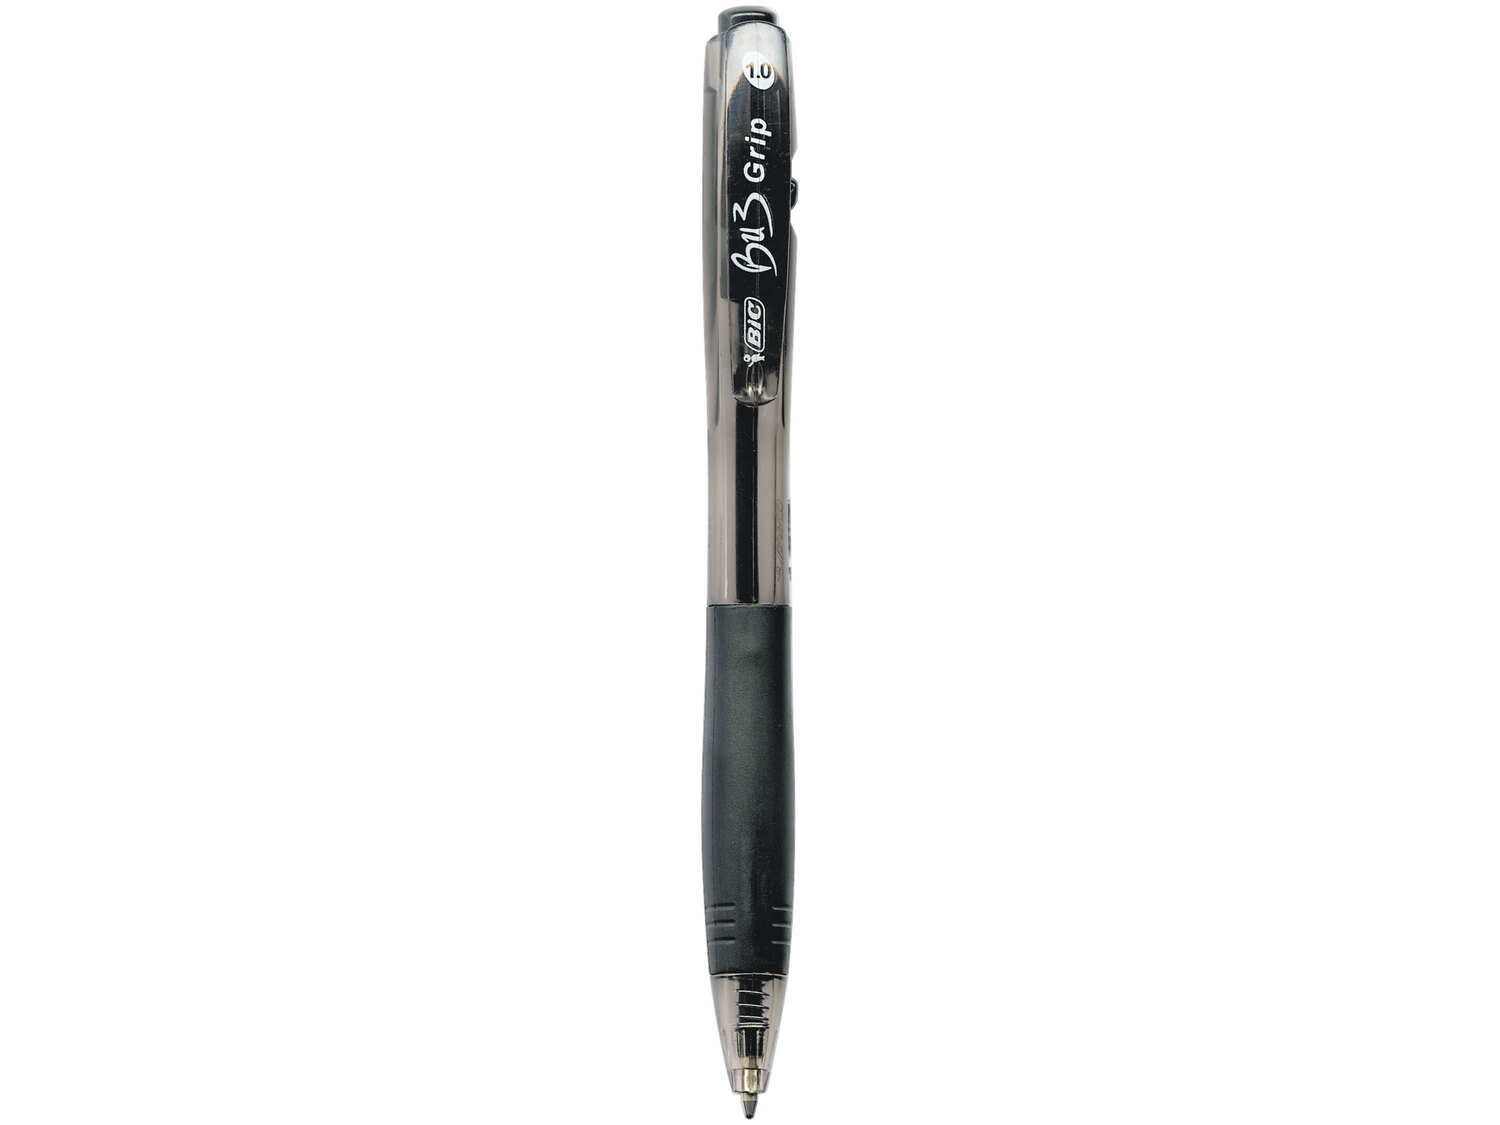 Zestaw 4 długopisów , cena 14,99 PLN  
-  czarny wkład
-  gumowy uchwyt
Opis